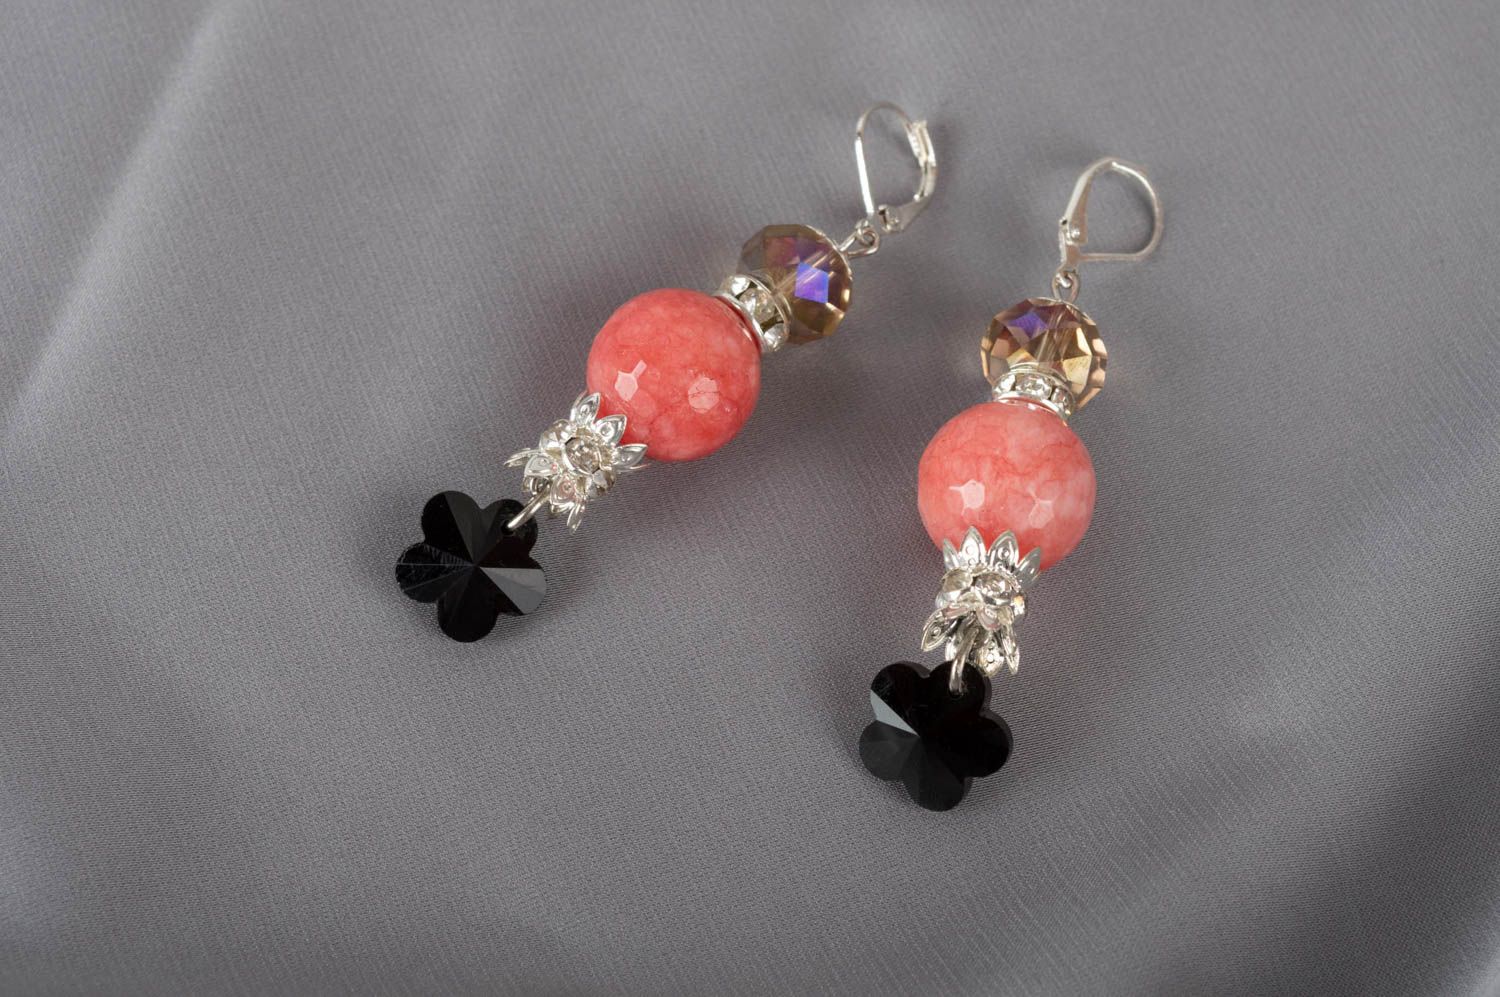 Unusual handmade gemstone earrings designer crystal earrings gifts for her photo 1